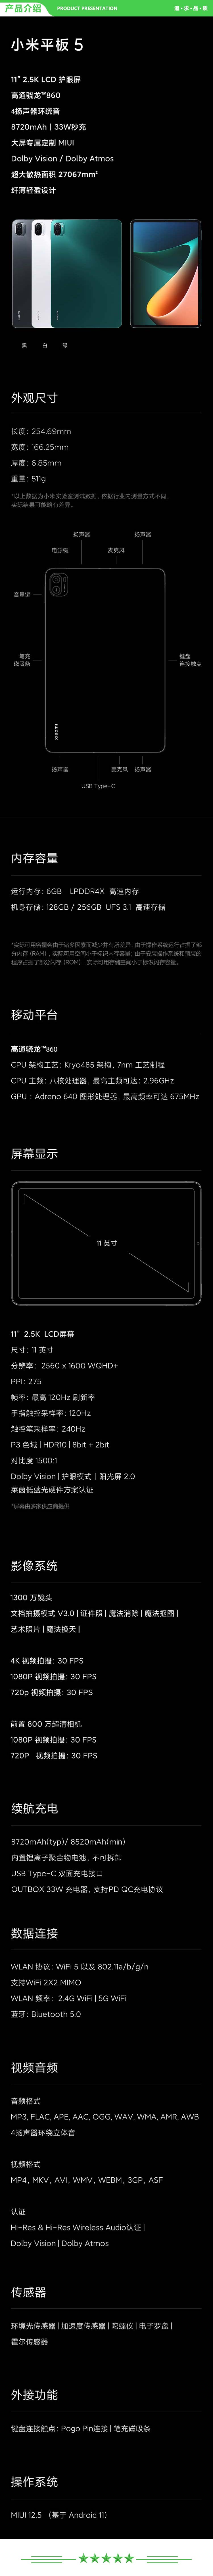 小米 xiaomi 平板5 平板电脑（11英寸2.5K高清 120Hz 骁龙860 6G+256GB 33W快充 杜比影音娱乐办公 黑色）+ 键盘套装.jpg